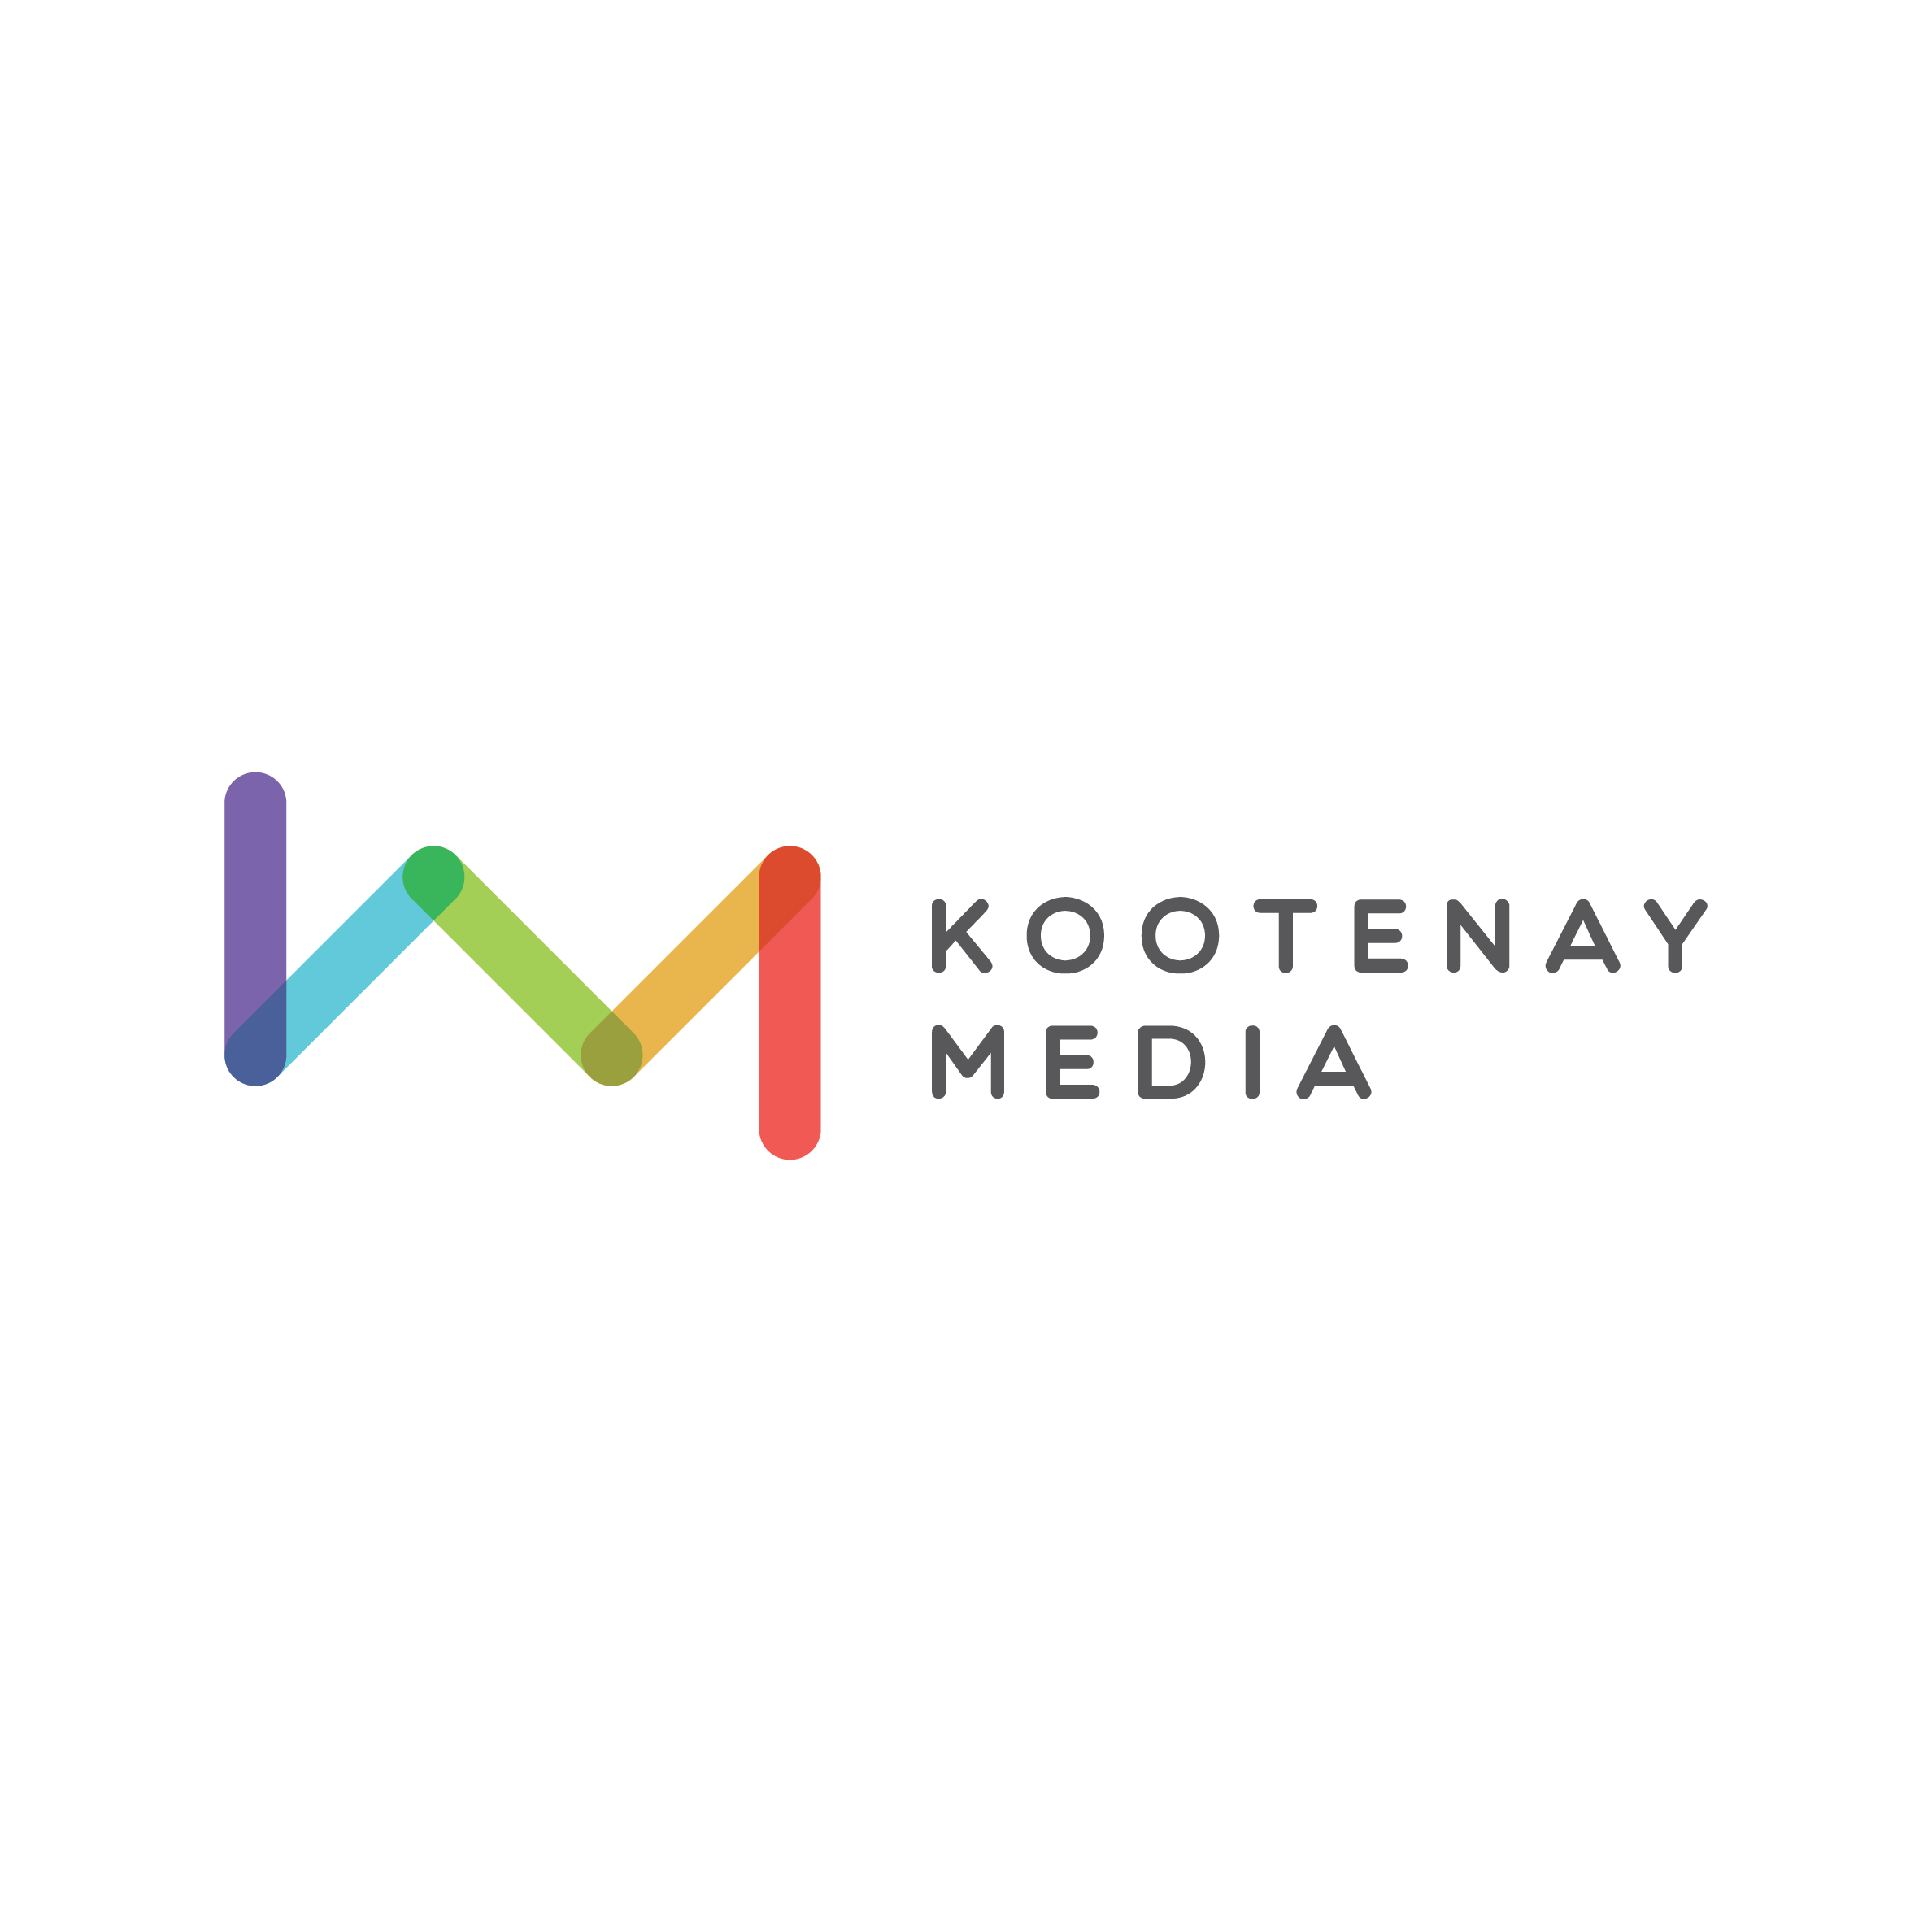 Kootenay Media